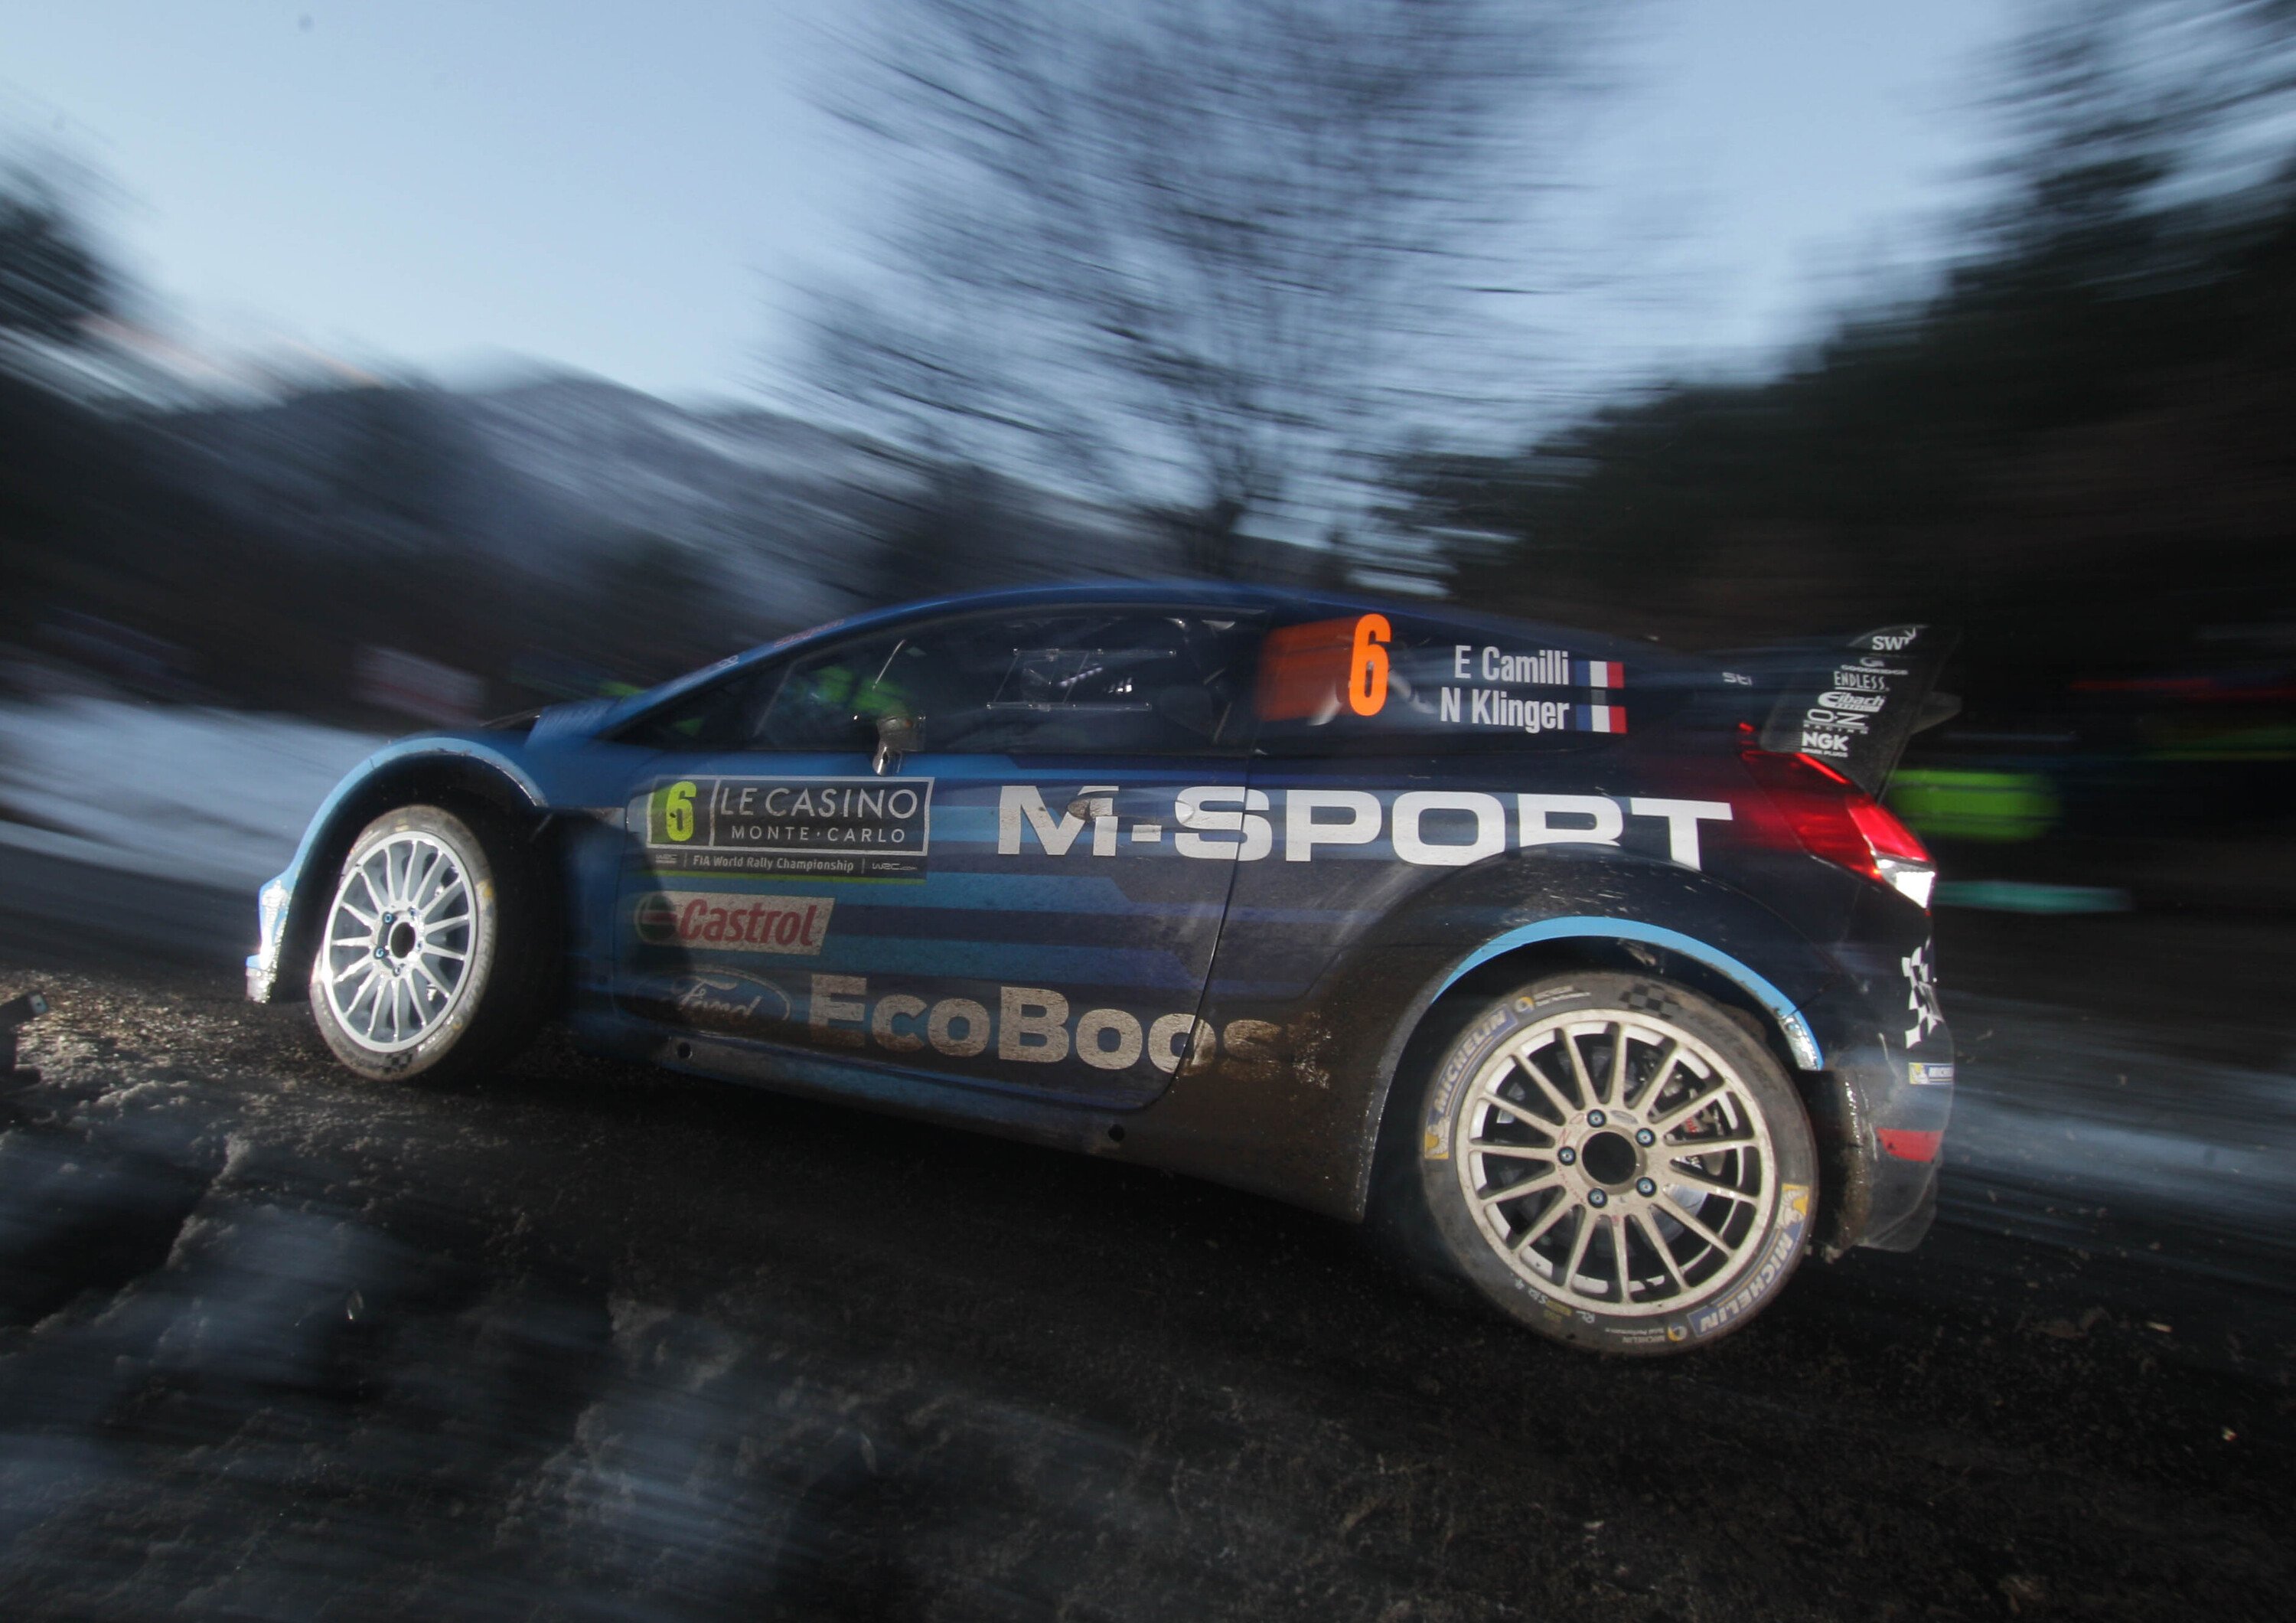 WRC 2016: in diretta su Mediaset Premium